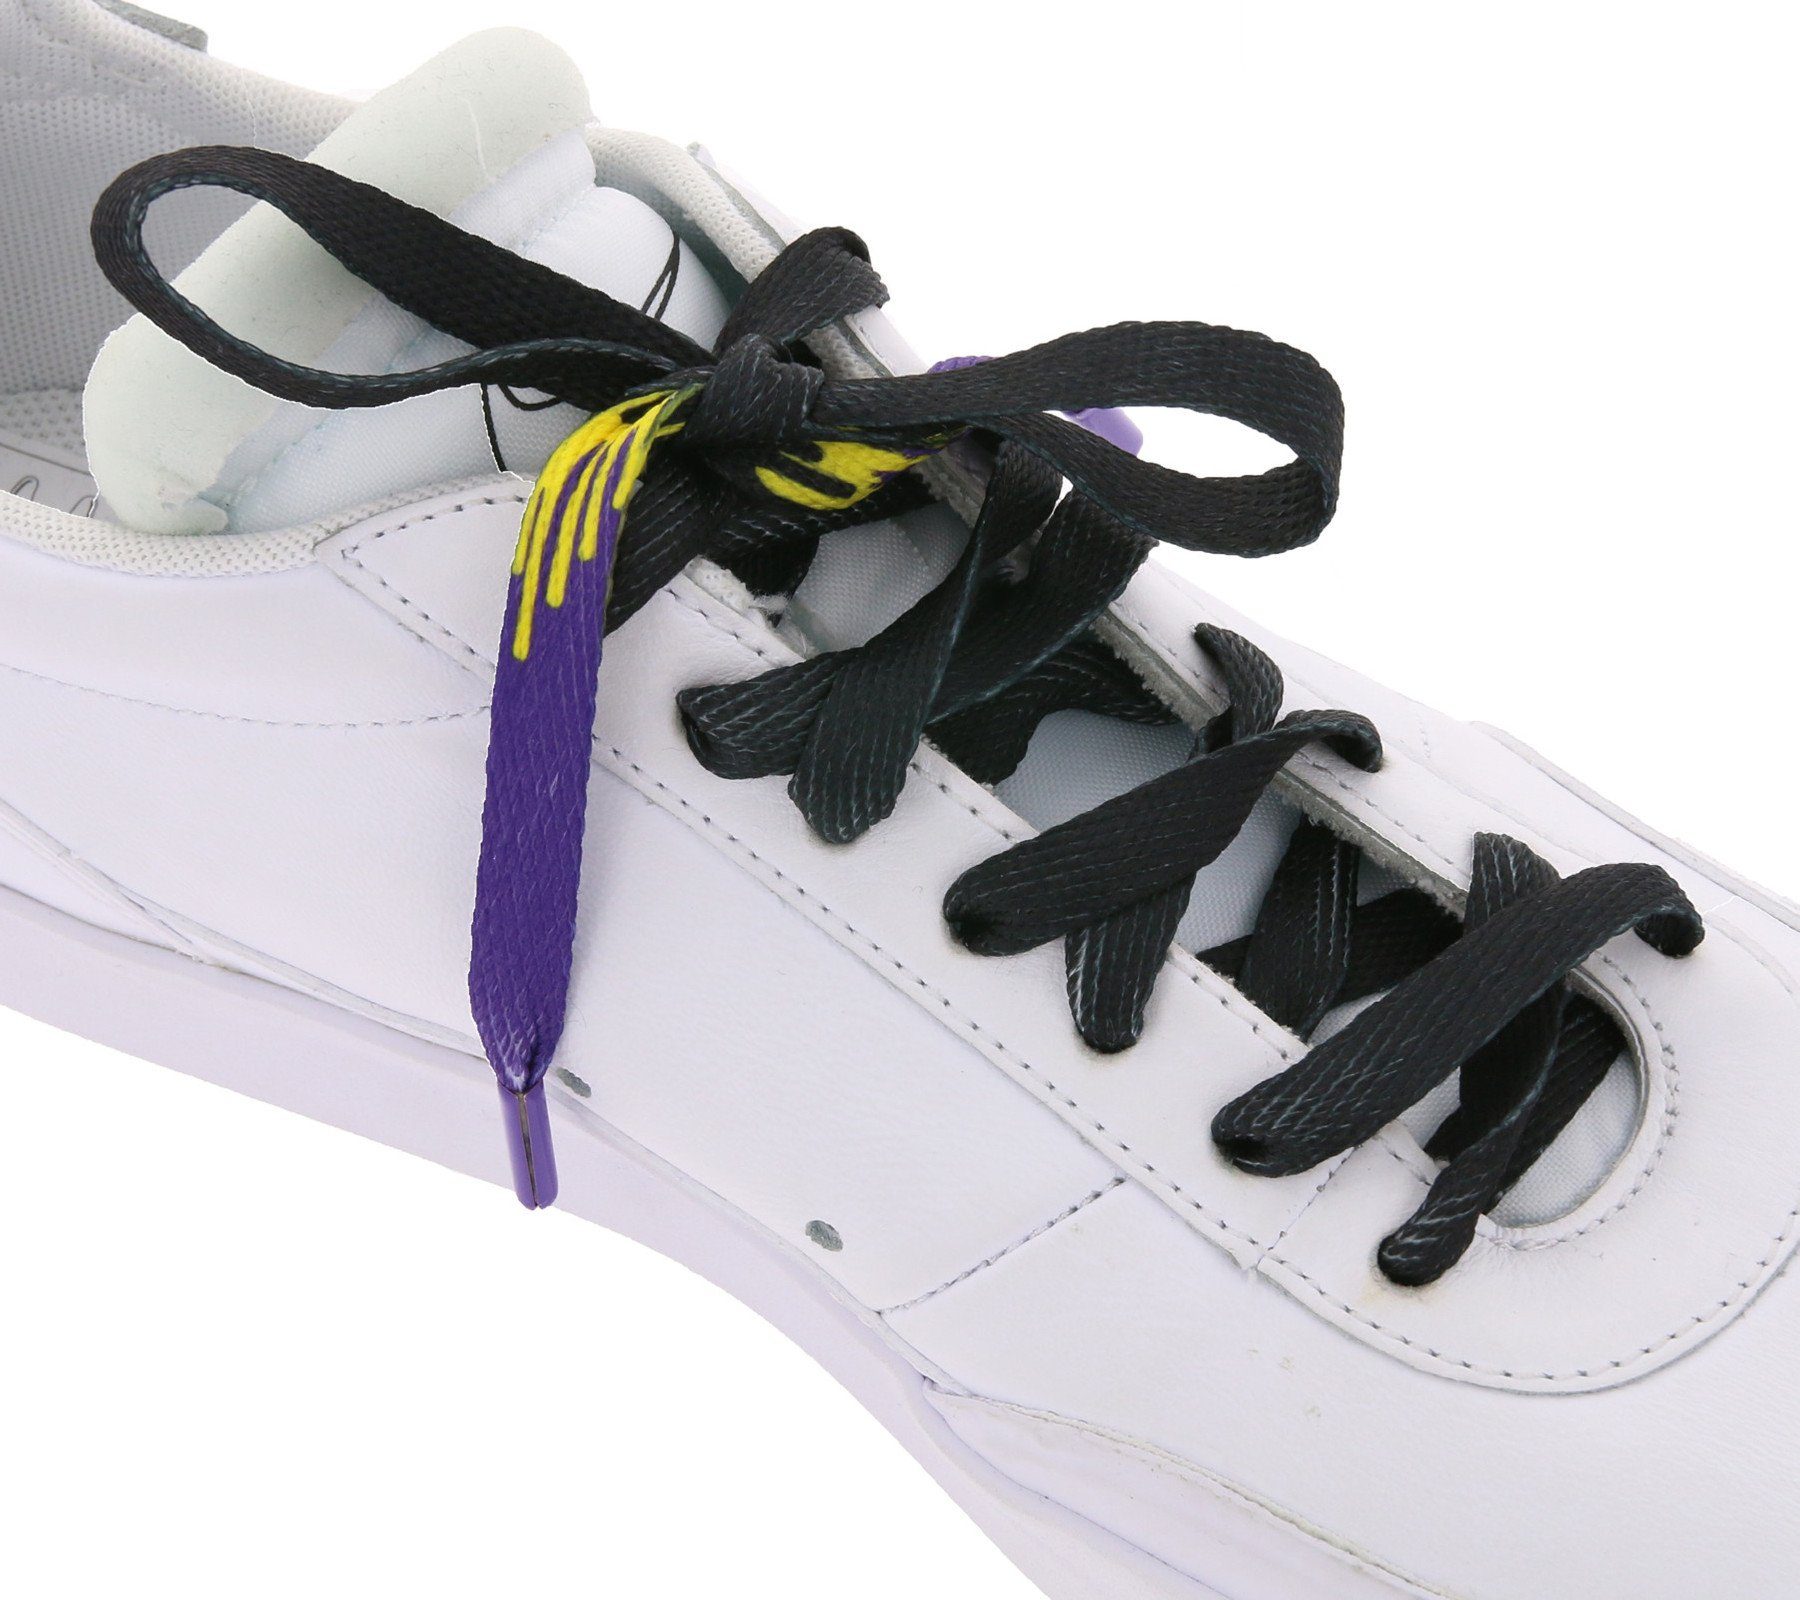 Schuhbänder Schuhe Schnürbänder Schnürsenkel Schnürsenkel TubeLaces coole Tubelaces Schwarz/Violett/Gelb